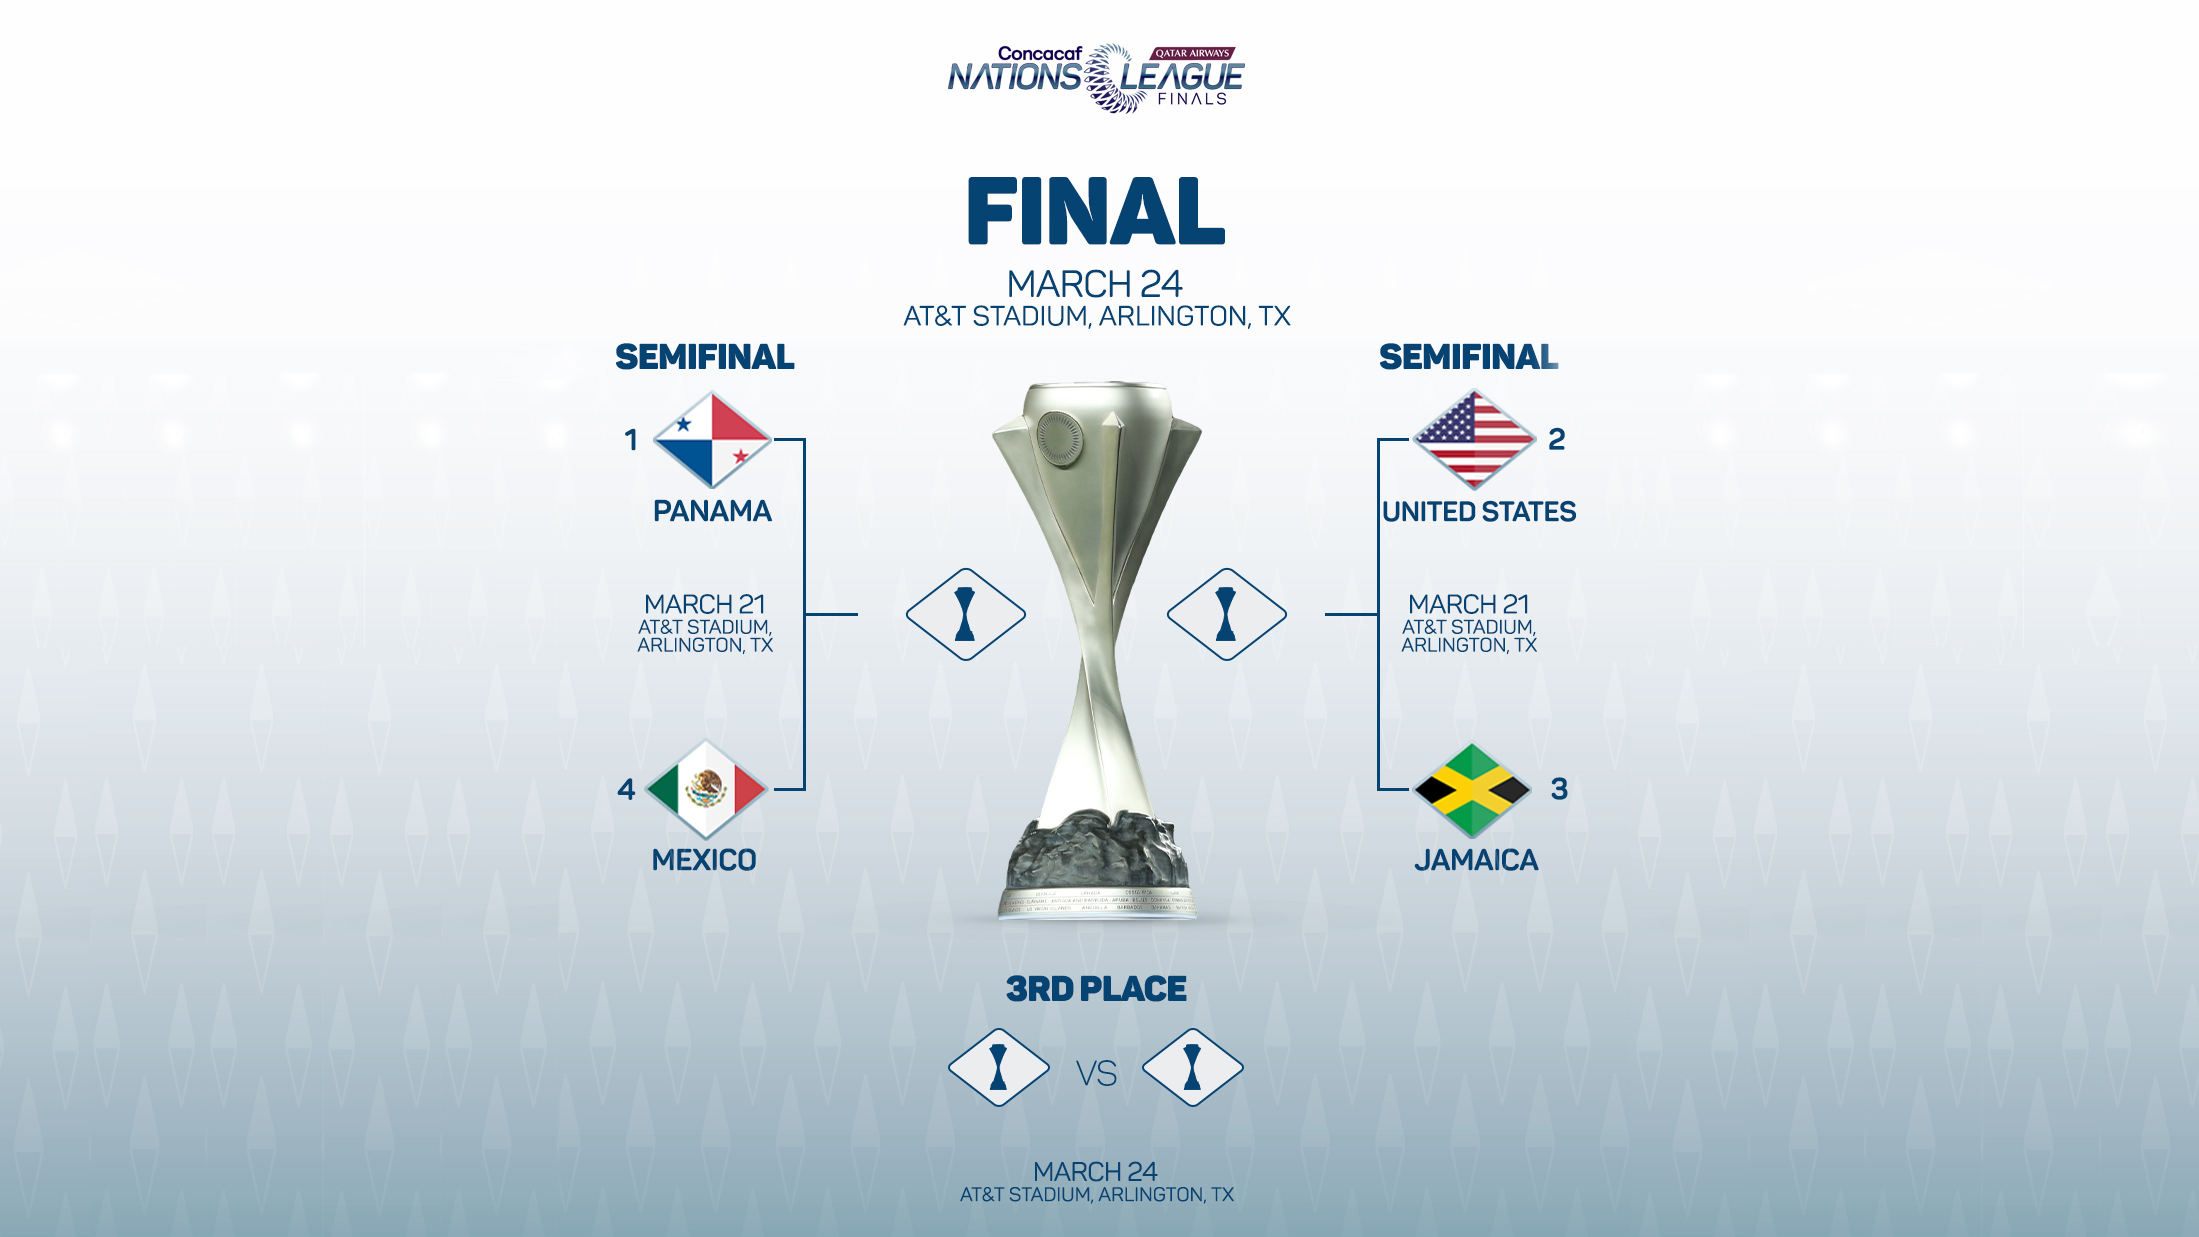 Concacaf oficializa calendario de semifinales y final del Final Four de